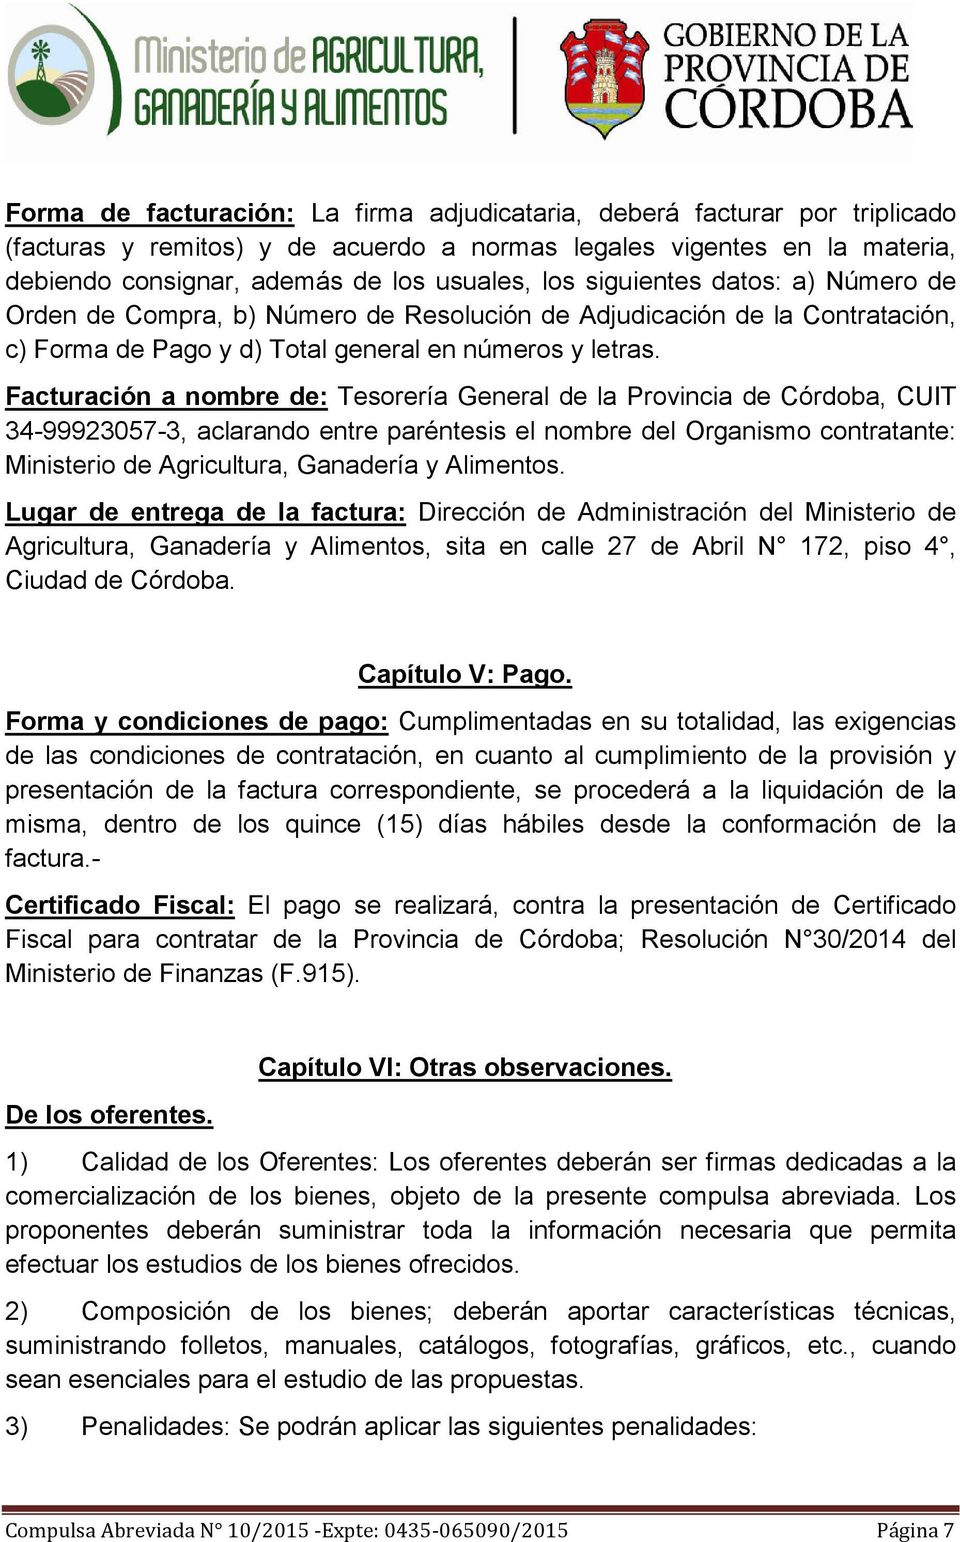 Facturación a nombre de: Tesorería General de la Provincia de Córdoba, CUIT 34-99923057-3, aclarando entre paréntesis el nombre del Organismo contratante: Ministerio de Agricultura, Ganadería y